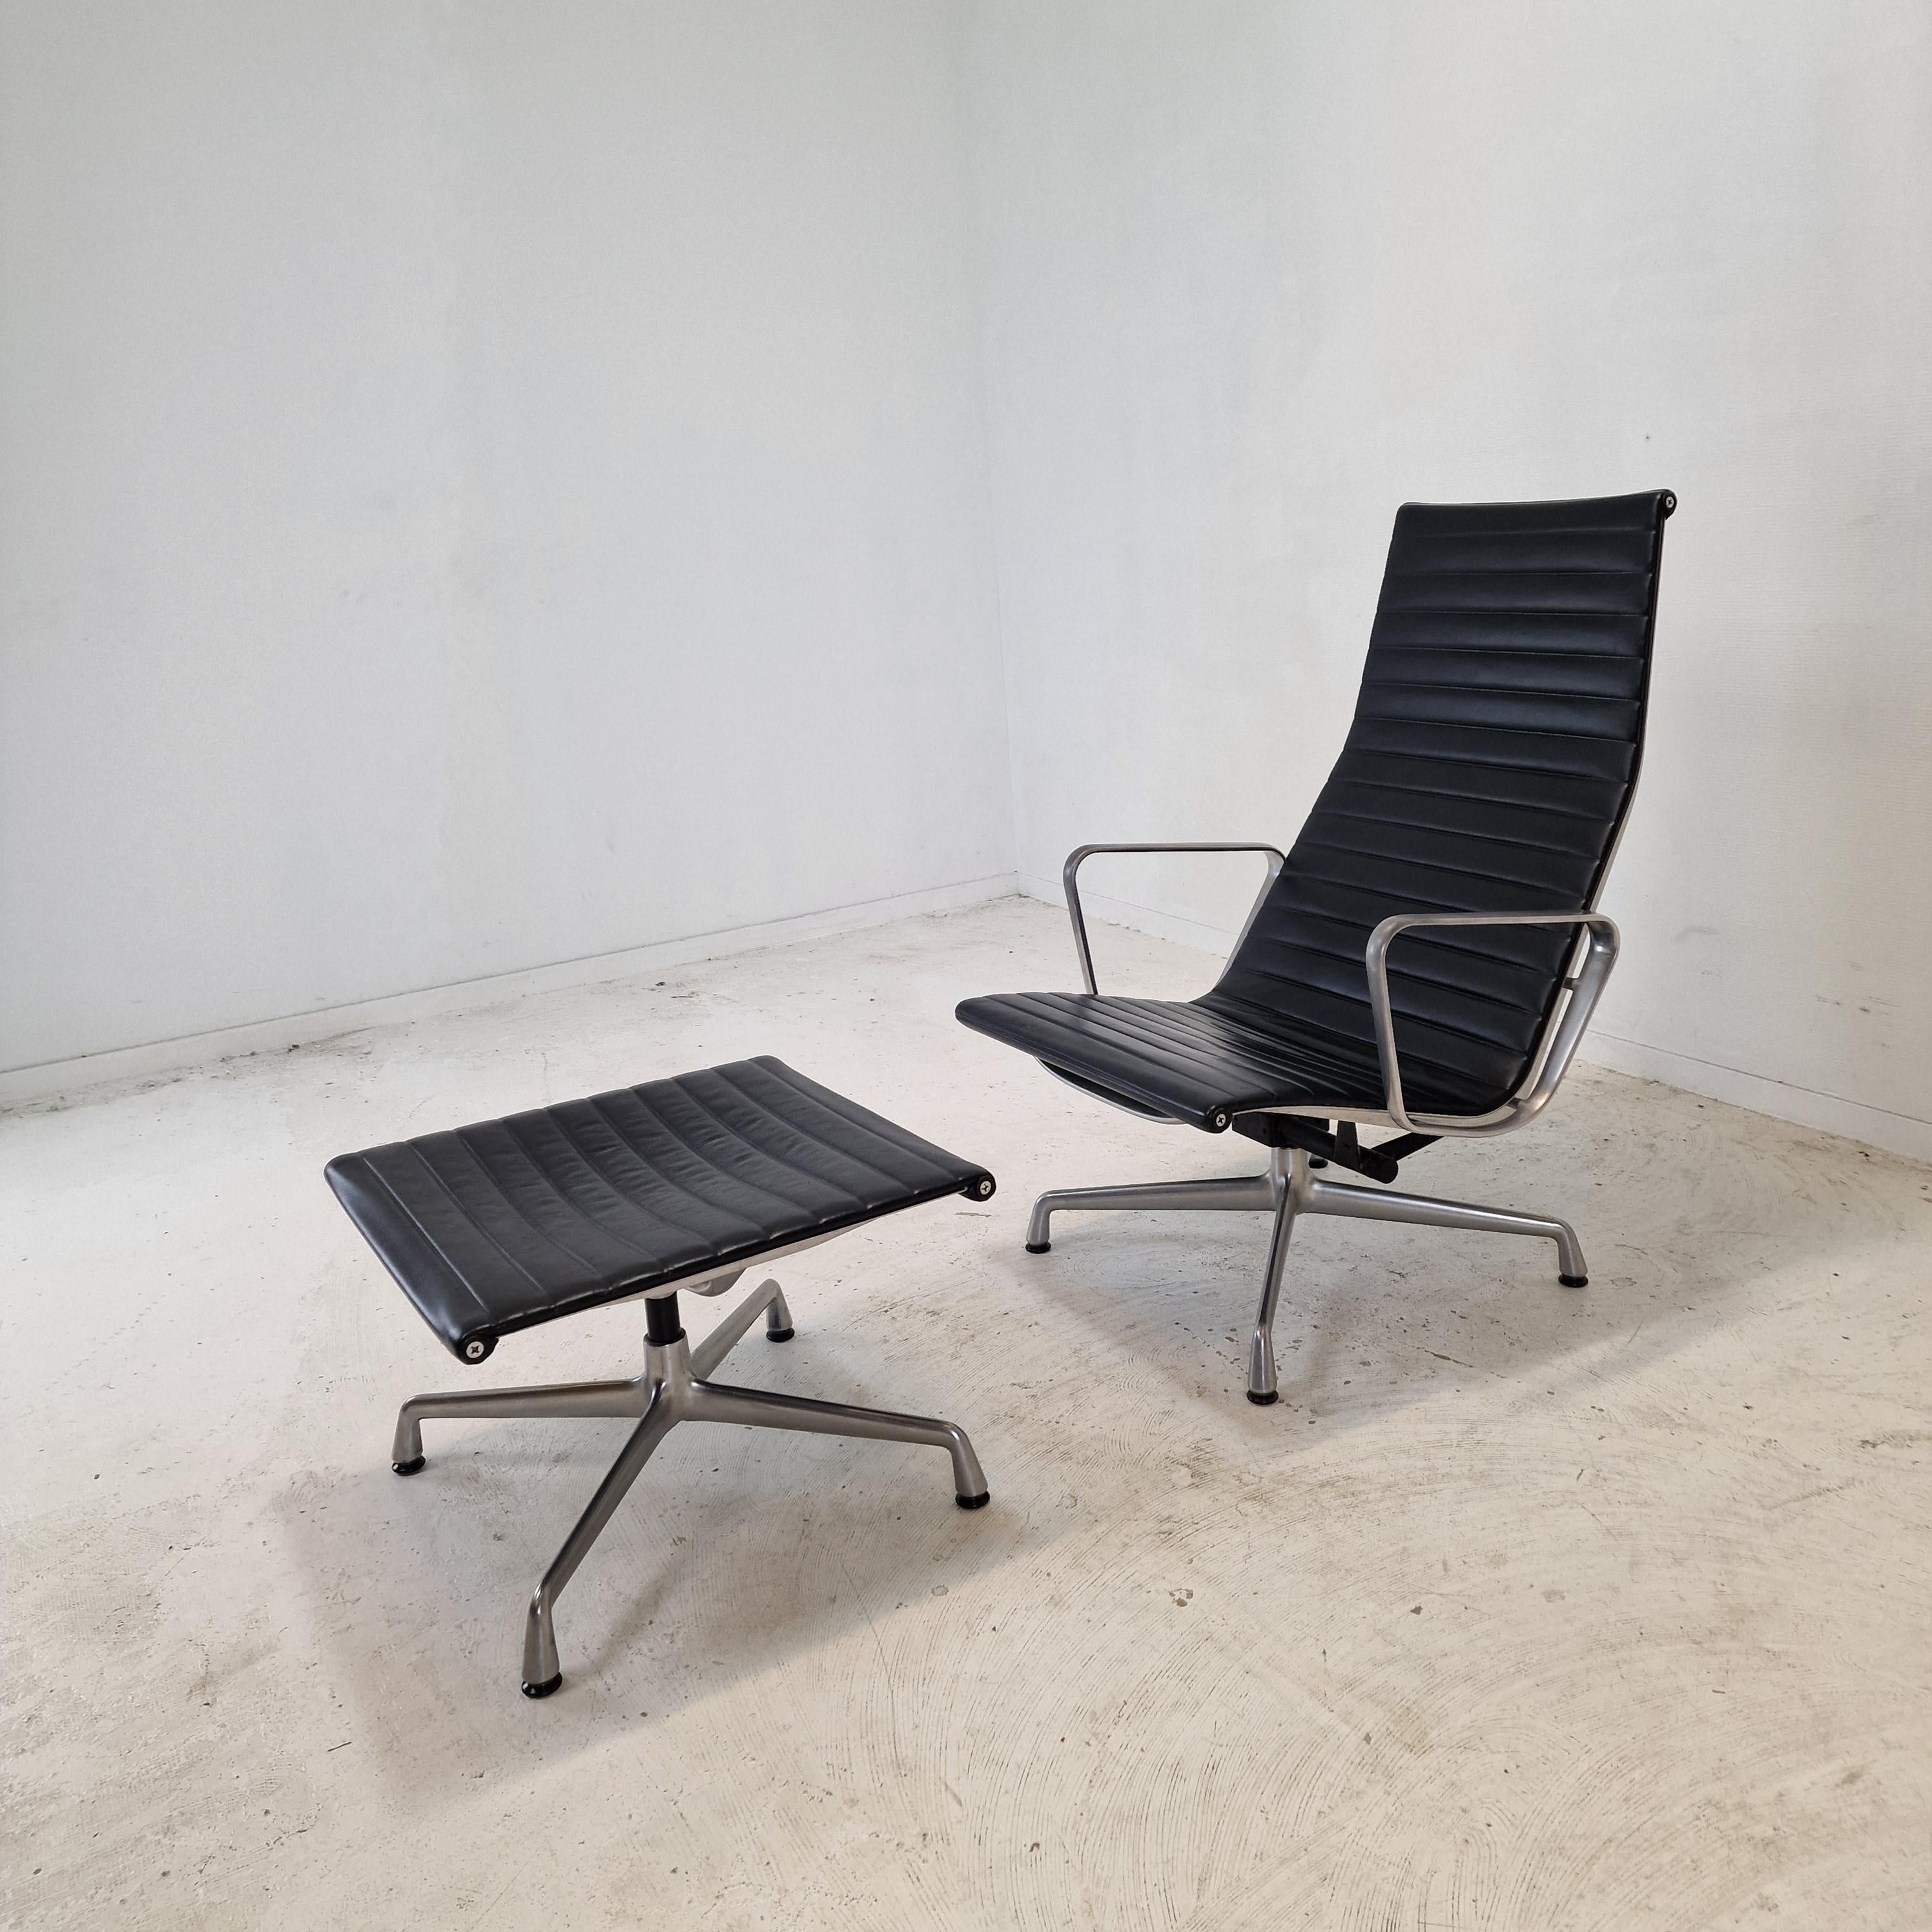 Fauteuil et pouf en aluminium EA124 & EA125 de Charles et Ray Eames pour Vitra, fabriqués en 1999.

Le fauteuil et le pouf en aluminium EA124 & EA125 constituent l'un des plus grands designs de meubles du 20e siècle. 
Charles et Ray Eames ont conçu